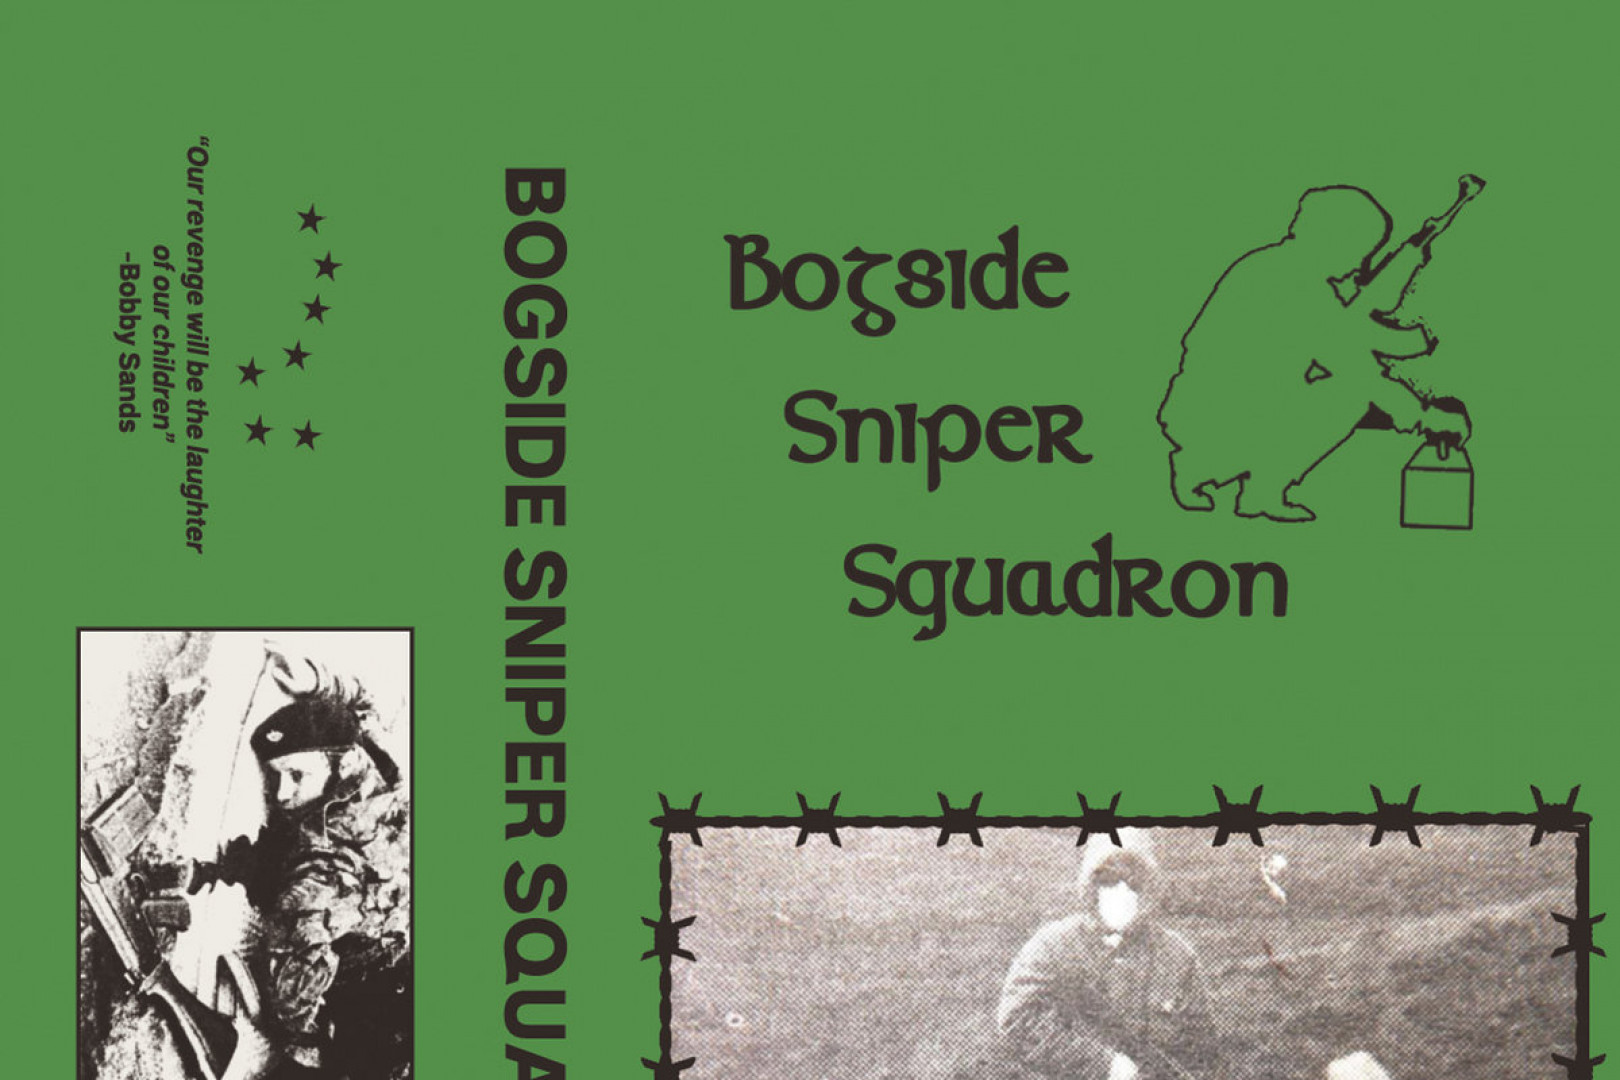 Bogside Sniper Squadron releases demo